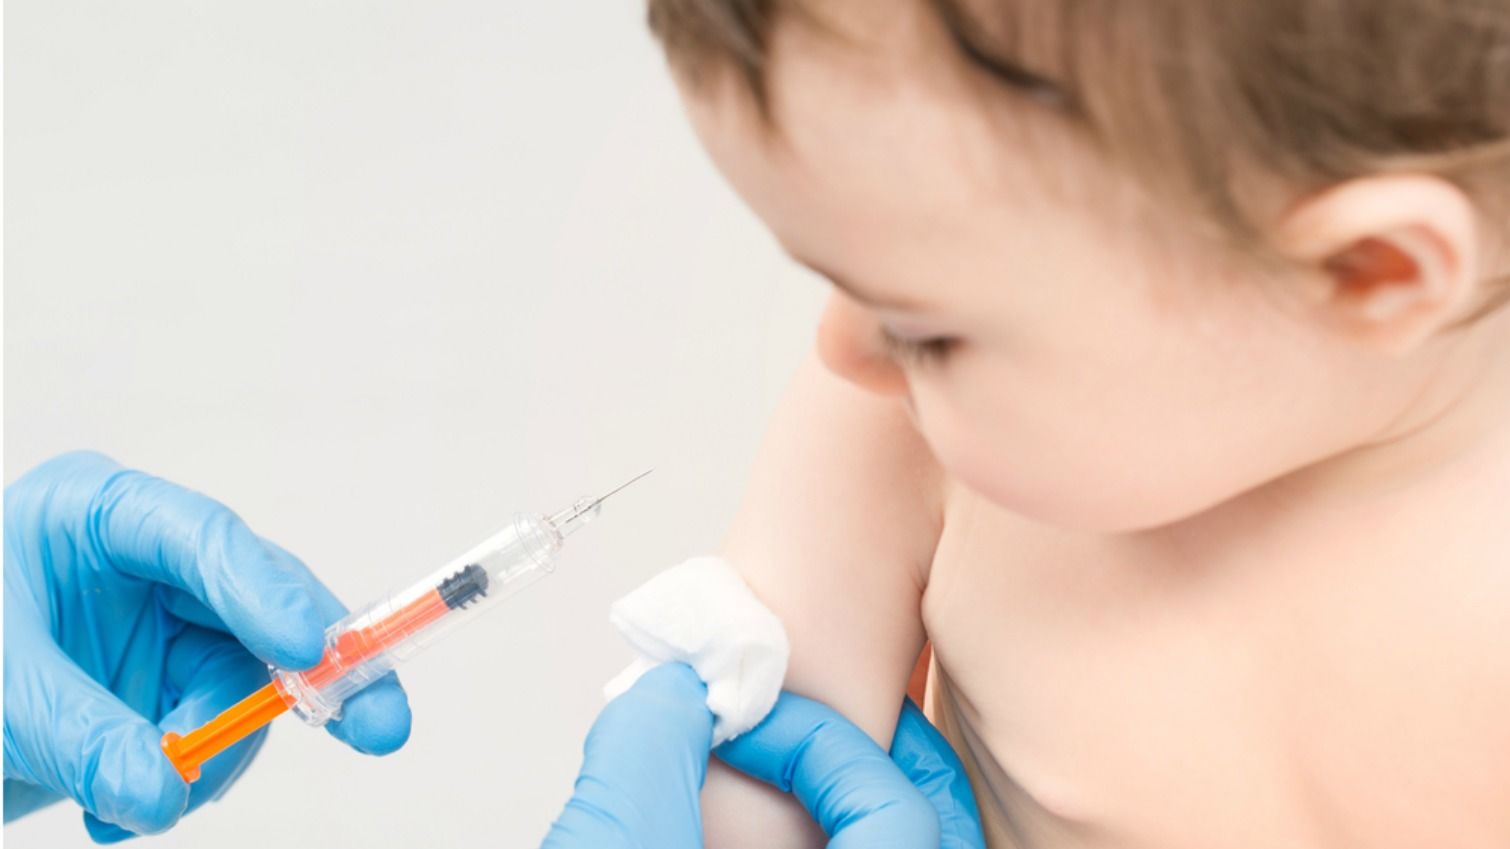 Vaksin Polio di Semarang Kosong 3 Bulan, Bayi-bayi Gagal Diimunisasi